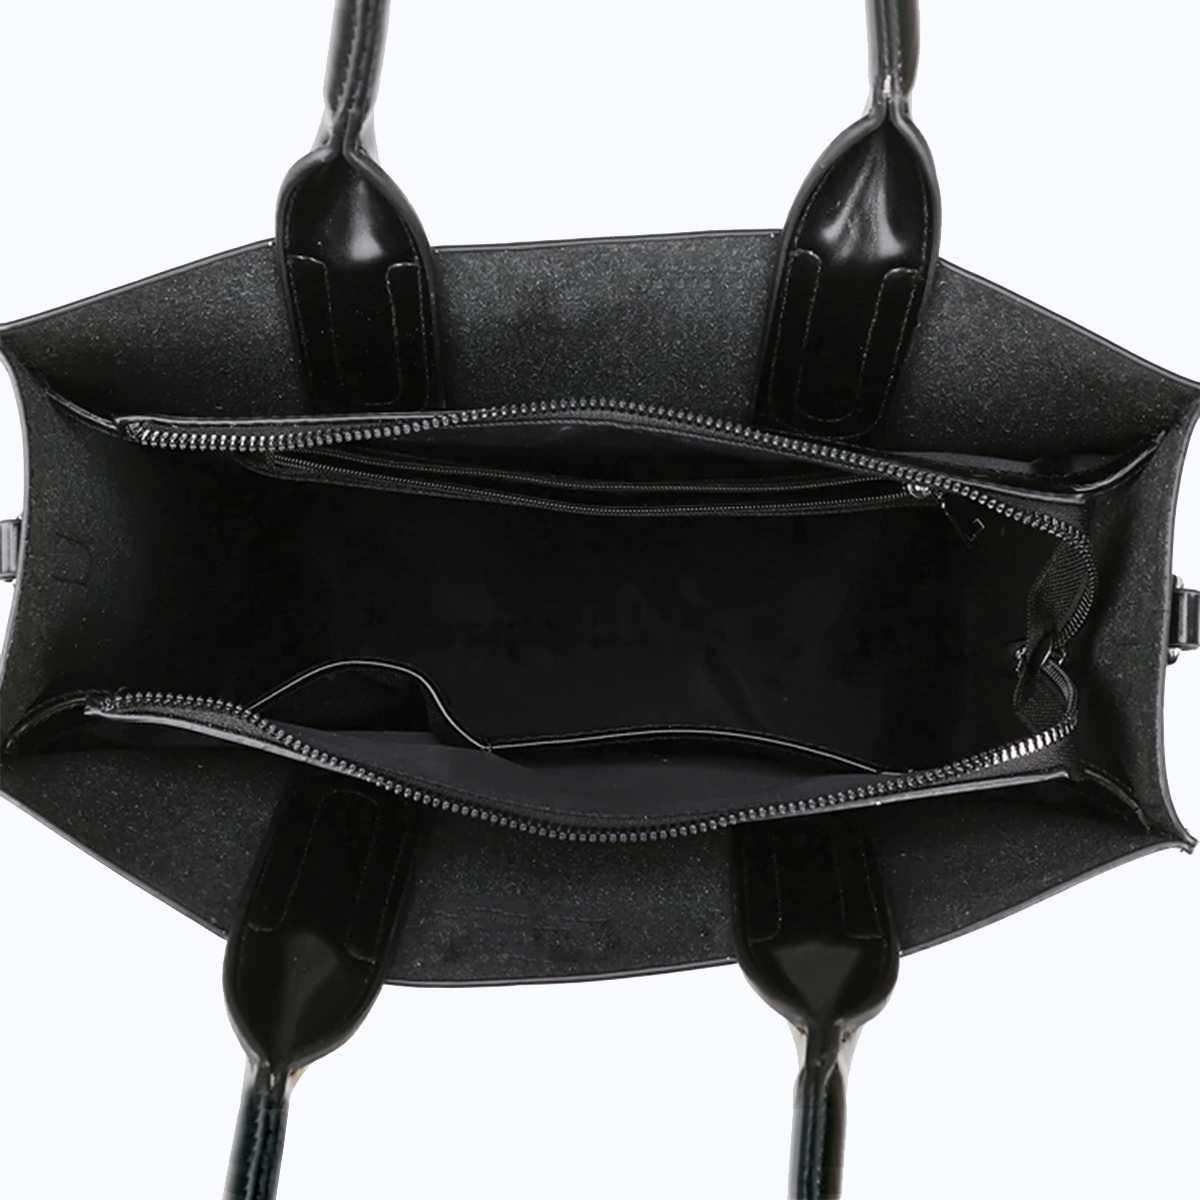 Shih Tzu Luxury Handbag V5